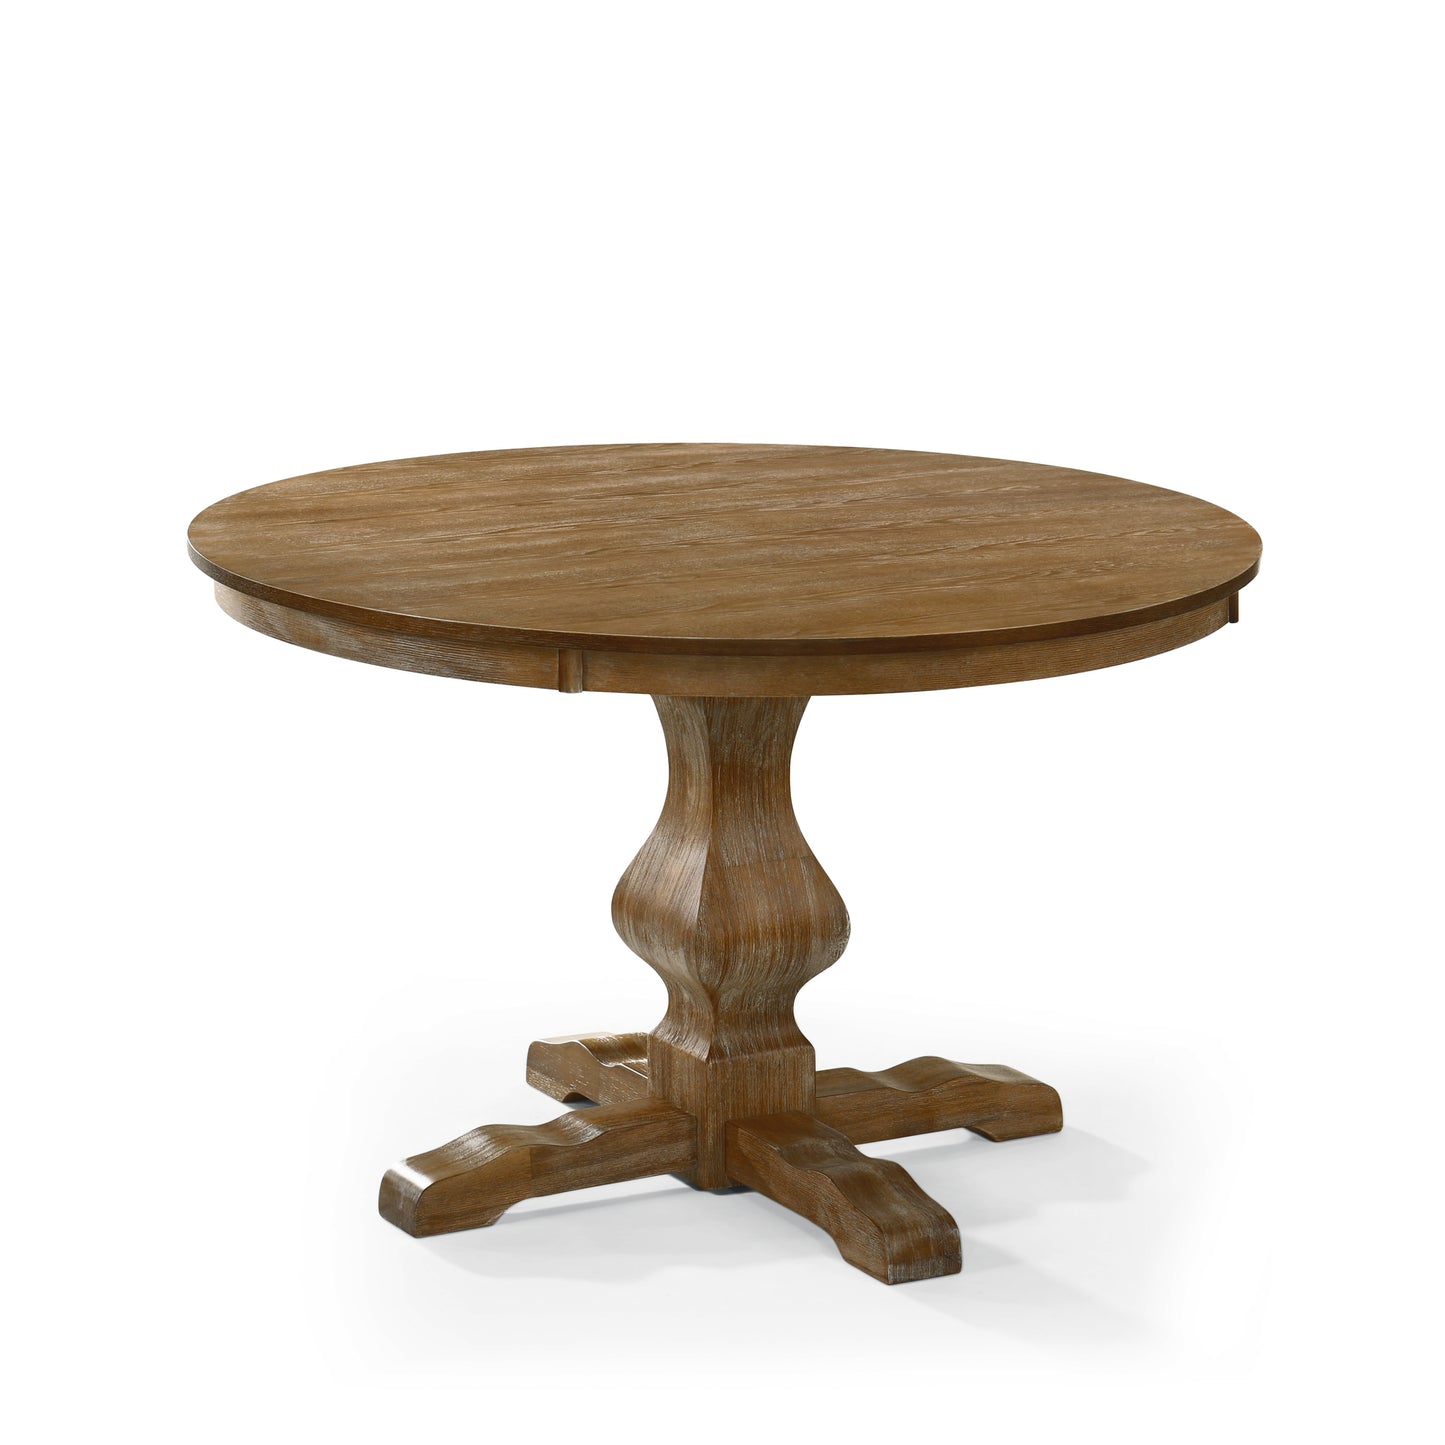 Remuda Rustic Wood Circular Dining Table